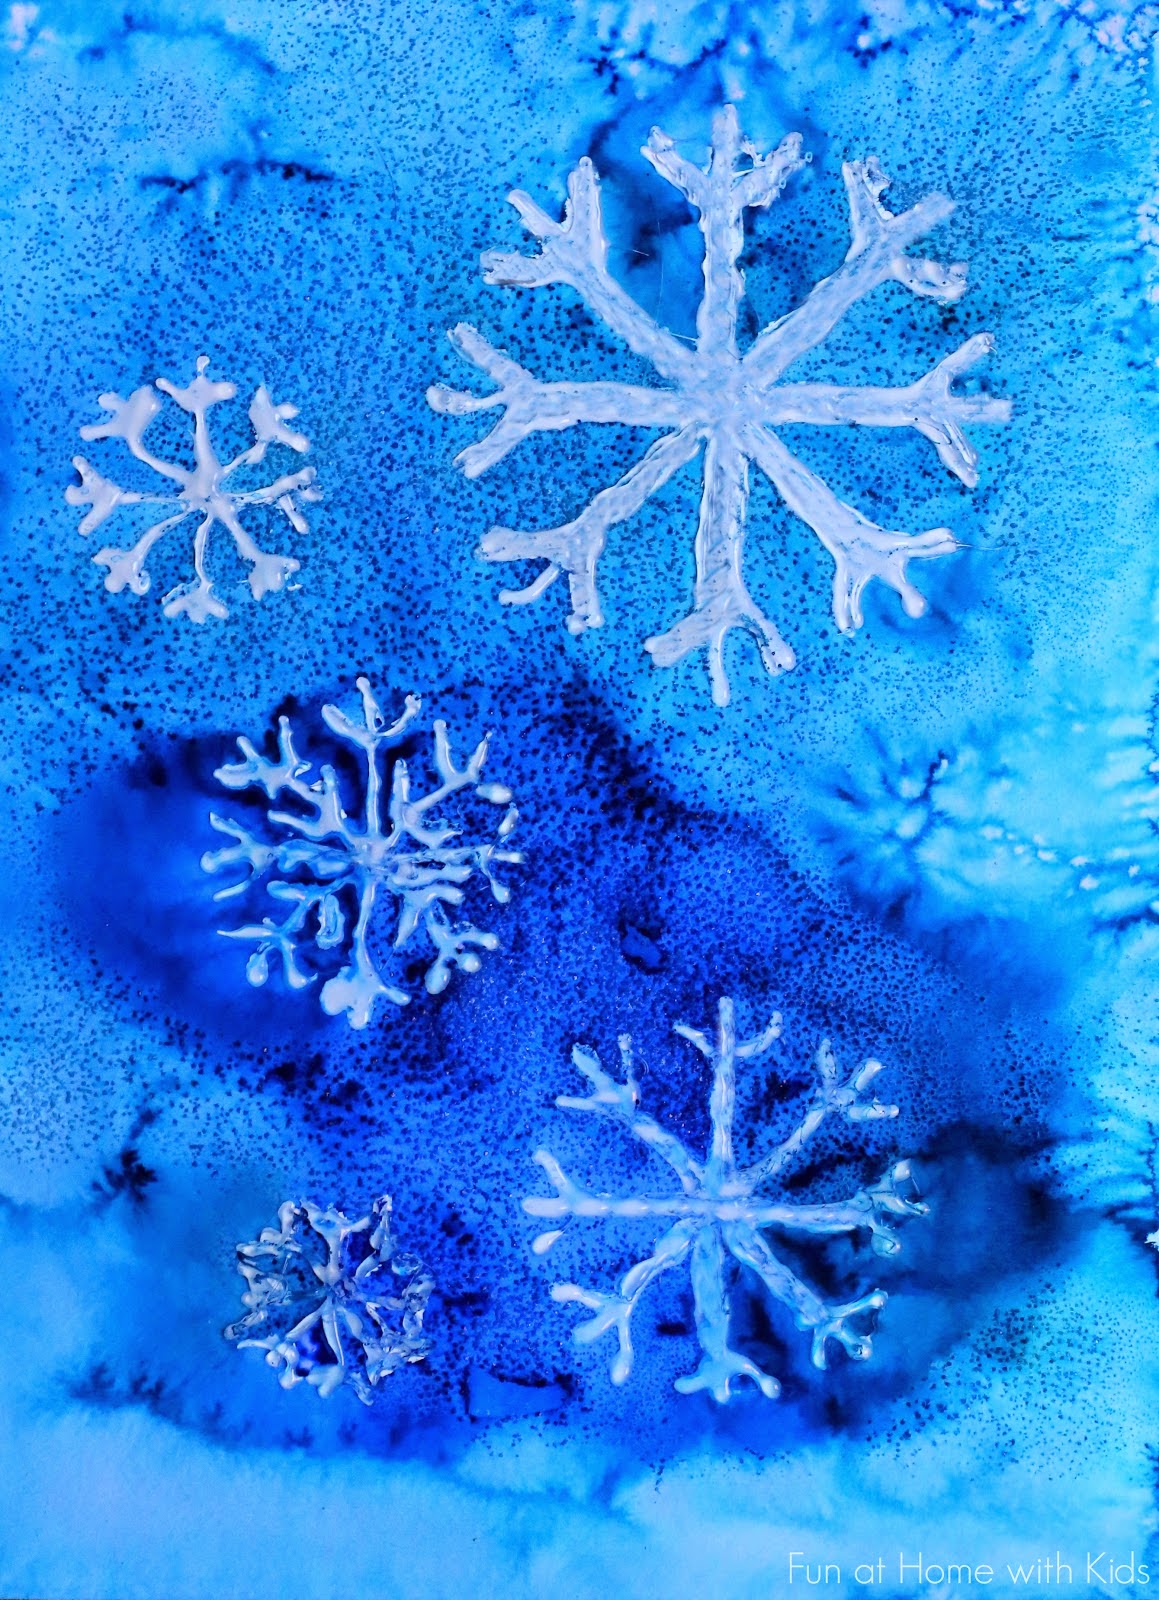 https://3.bp.blogspot.com/-5Nr5GbquXxc/VJd8RSi4_VI/AAAAAAAAF_k/zD_5KsYvKoM/s1600/water-color-resist-snowflakes.jpg